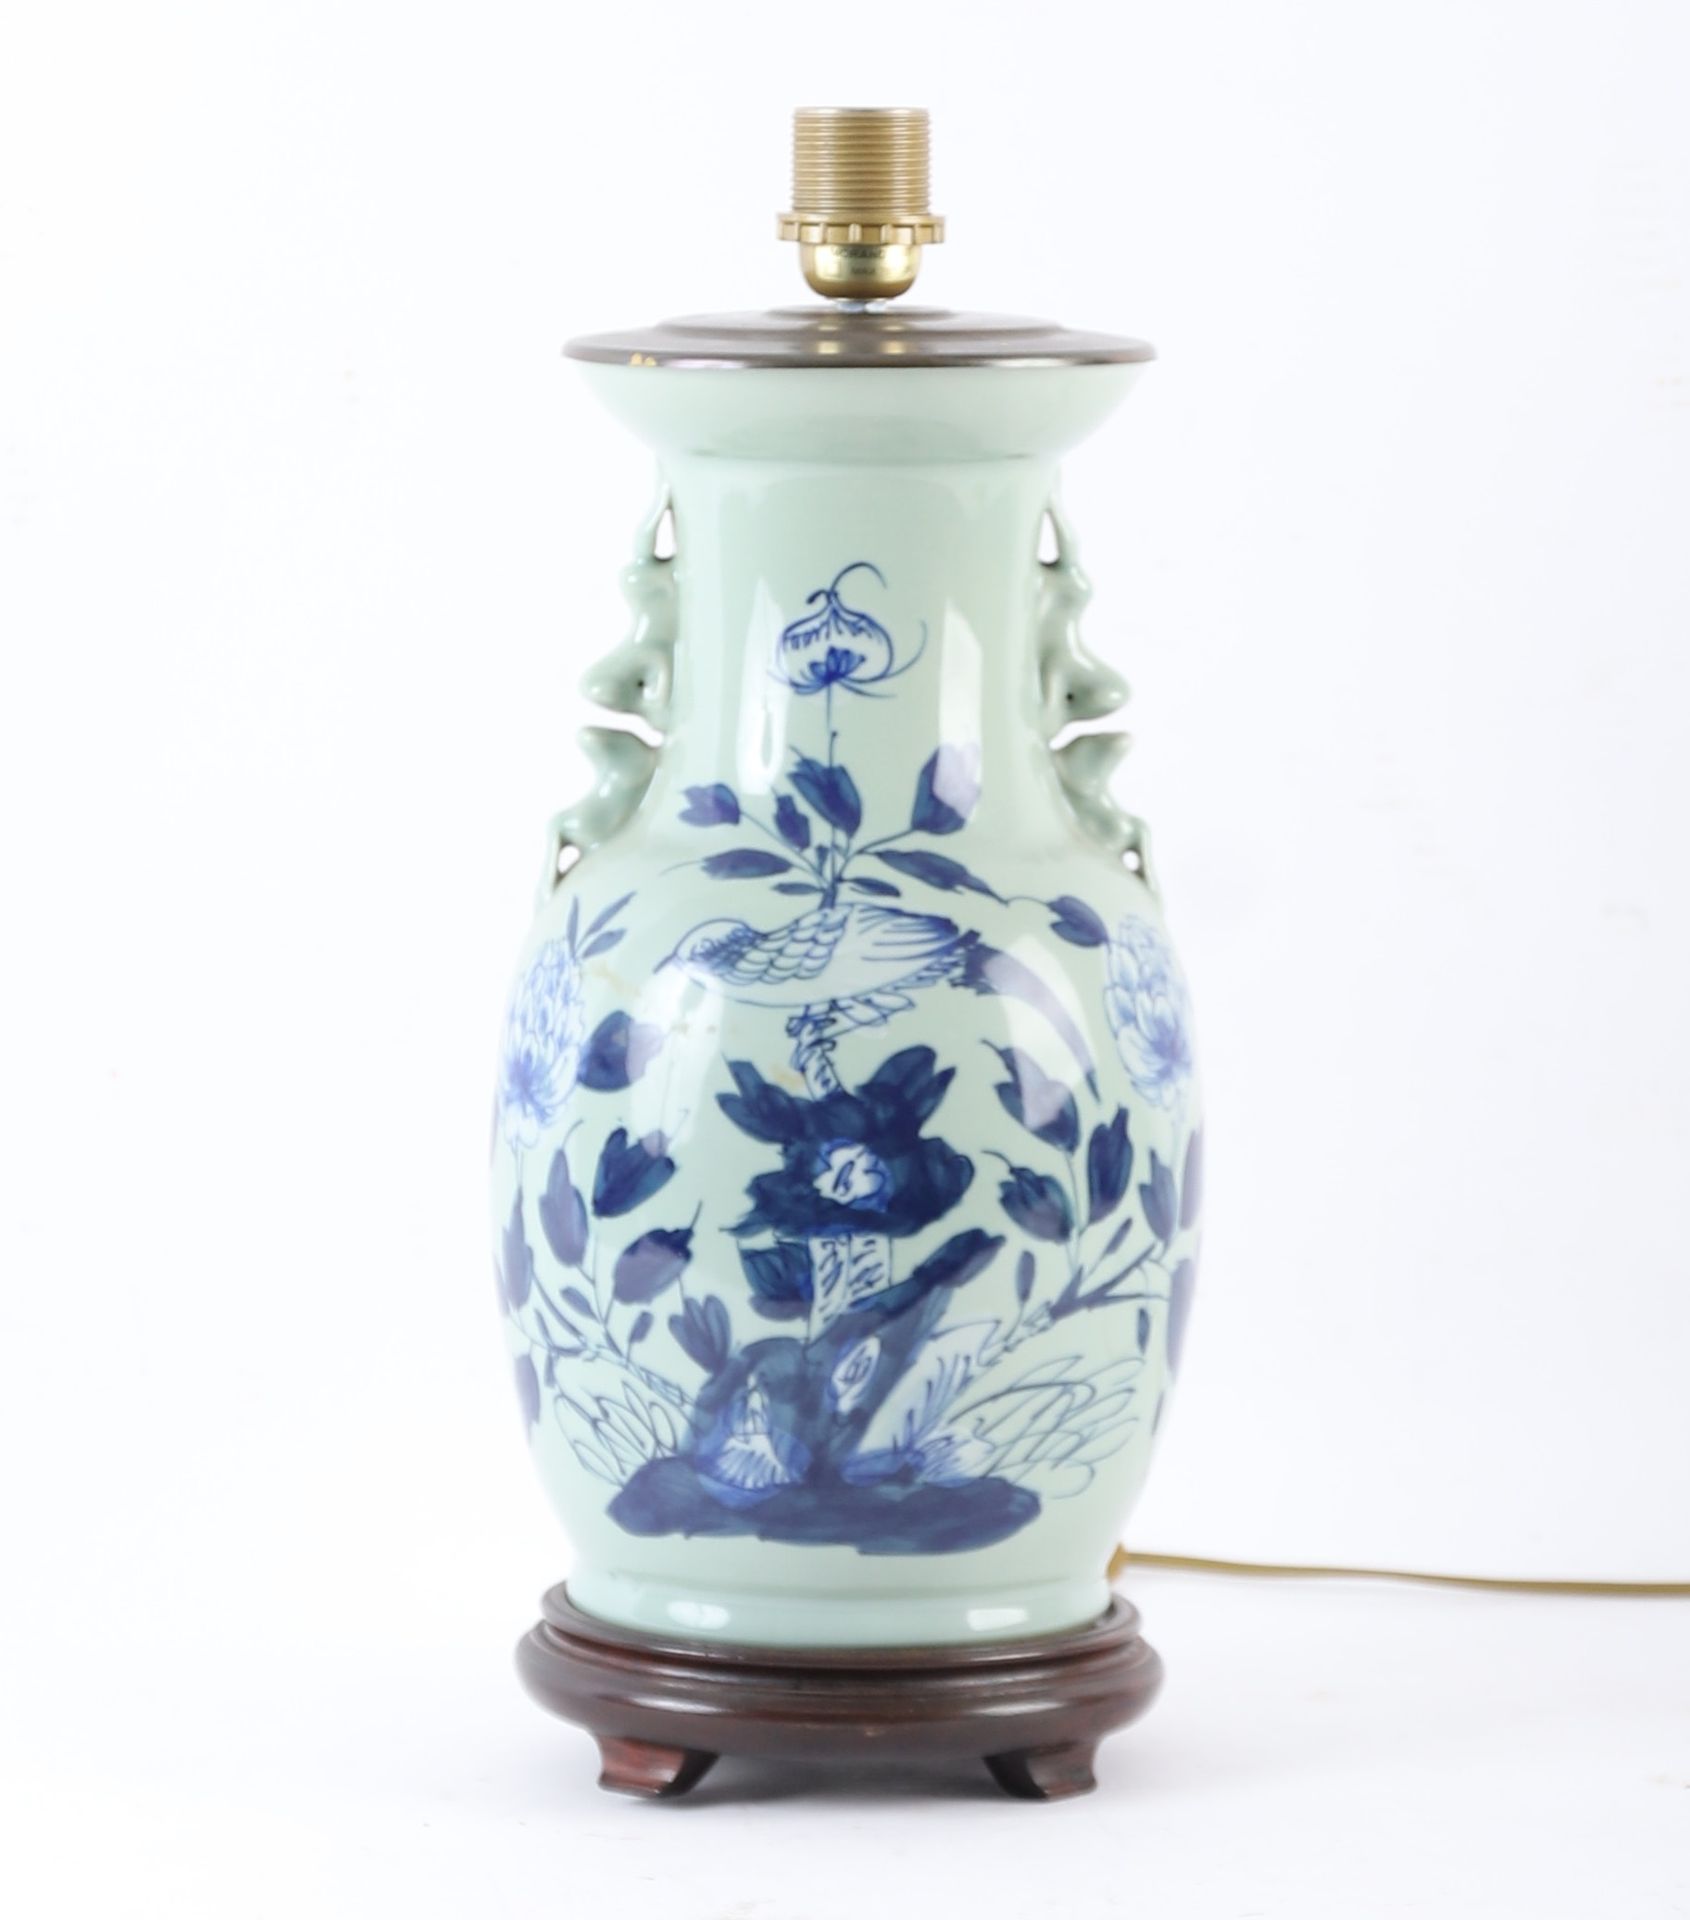 Null 中国瓷器柱形花瓶
青花瓷色，花枝上的鸟儿
风格化的动物把手
安装在灯上
20世纪
高：40厘米（包括木制四角形底座）